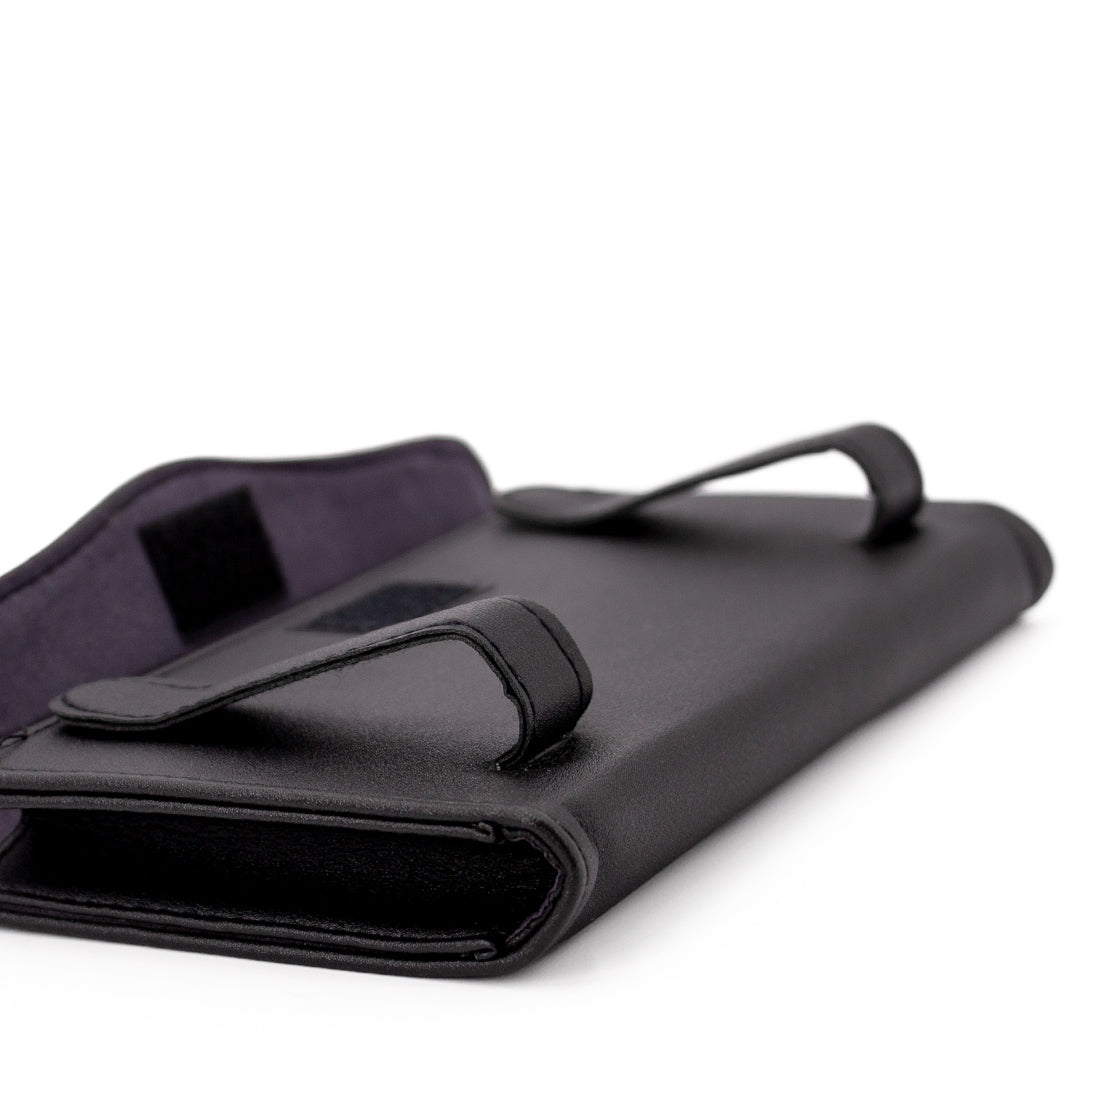 EcoNour Car Tissue Holder 9 x 5 inches - Black Sun Visor Napkin